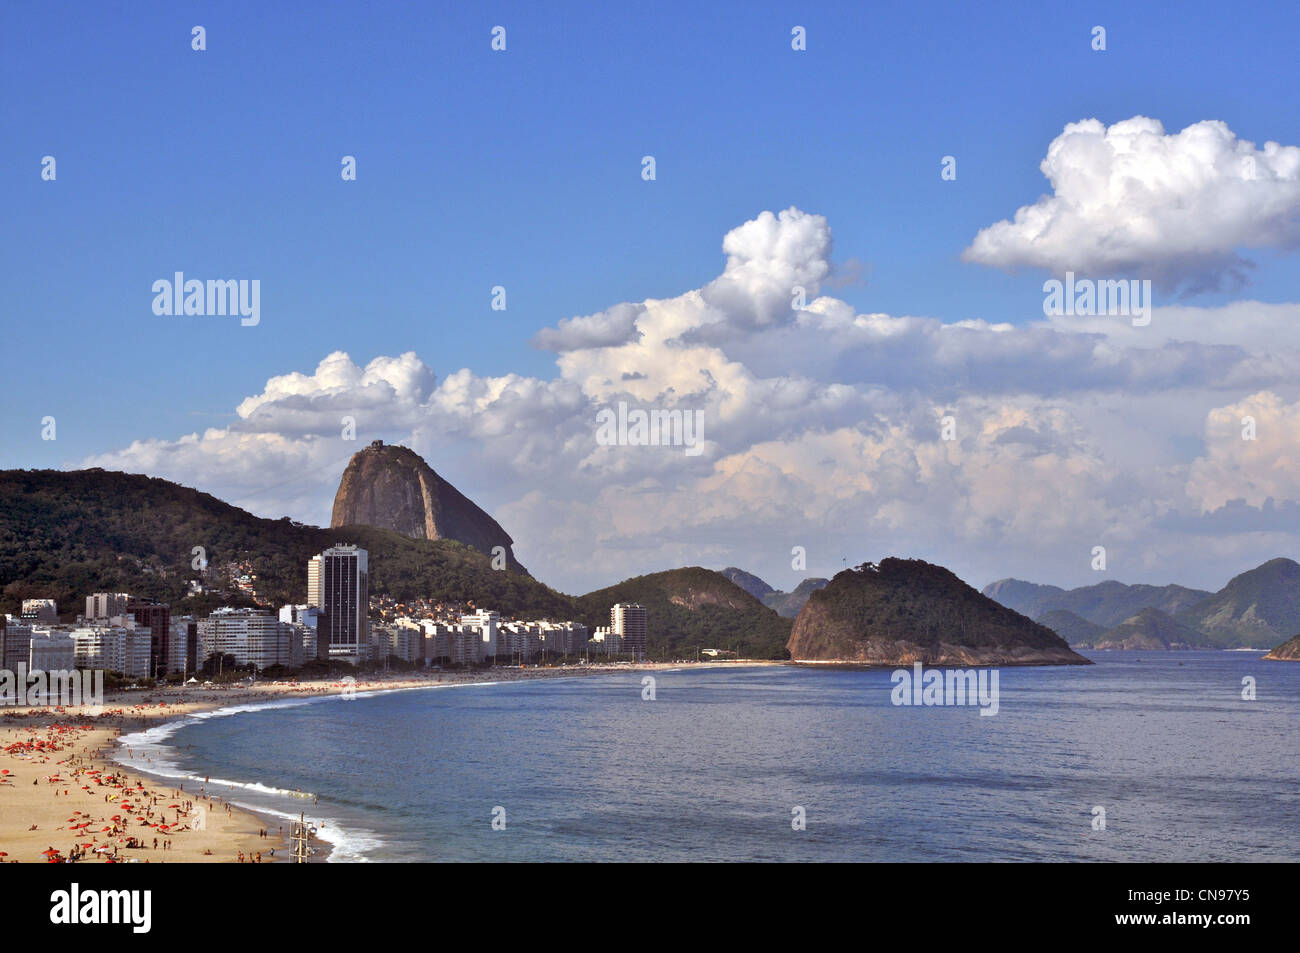 La plage de Copacabana et le Pain de Sucre Rio de Janeiro Brésil Banque D'Images